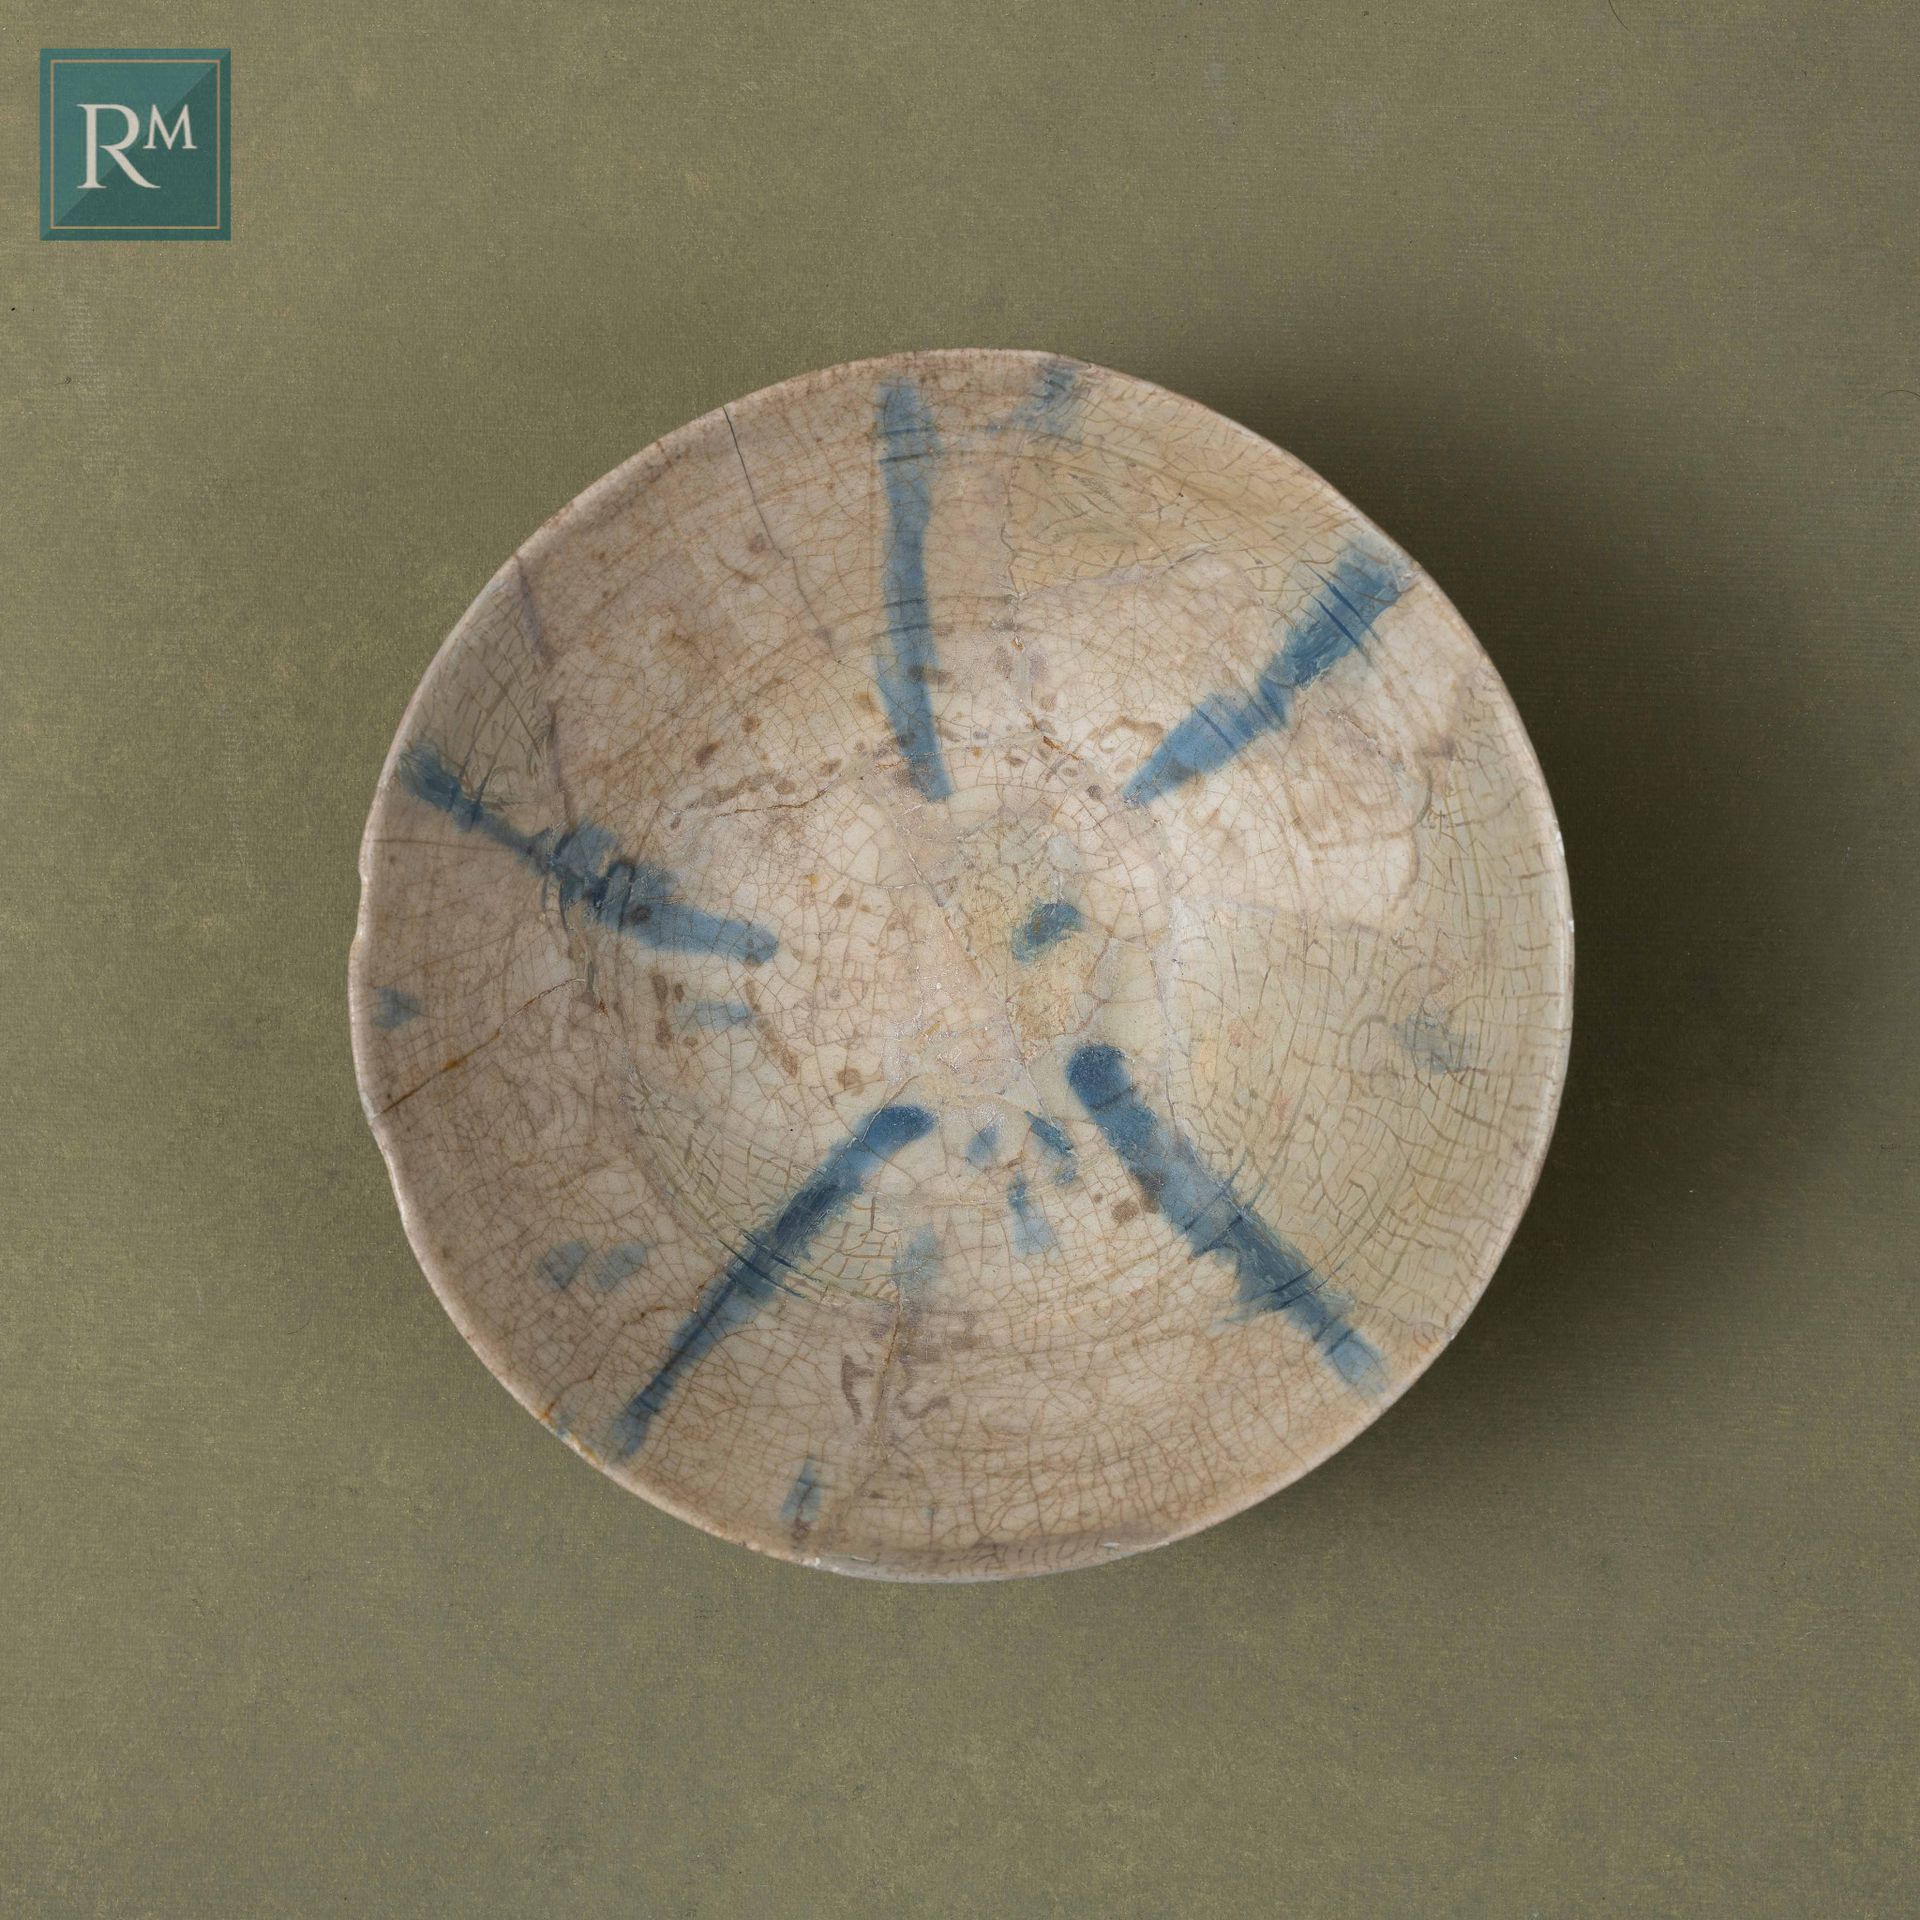 COUPE BLANCHE EN CERAMIQUE AUX LIGNES BLEUES 
伊朗，12世纪末-13世纪初









硅质陶瓷碗，侧面呈喇&hellip;